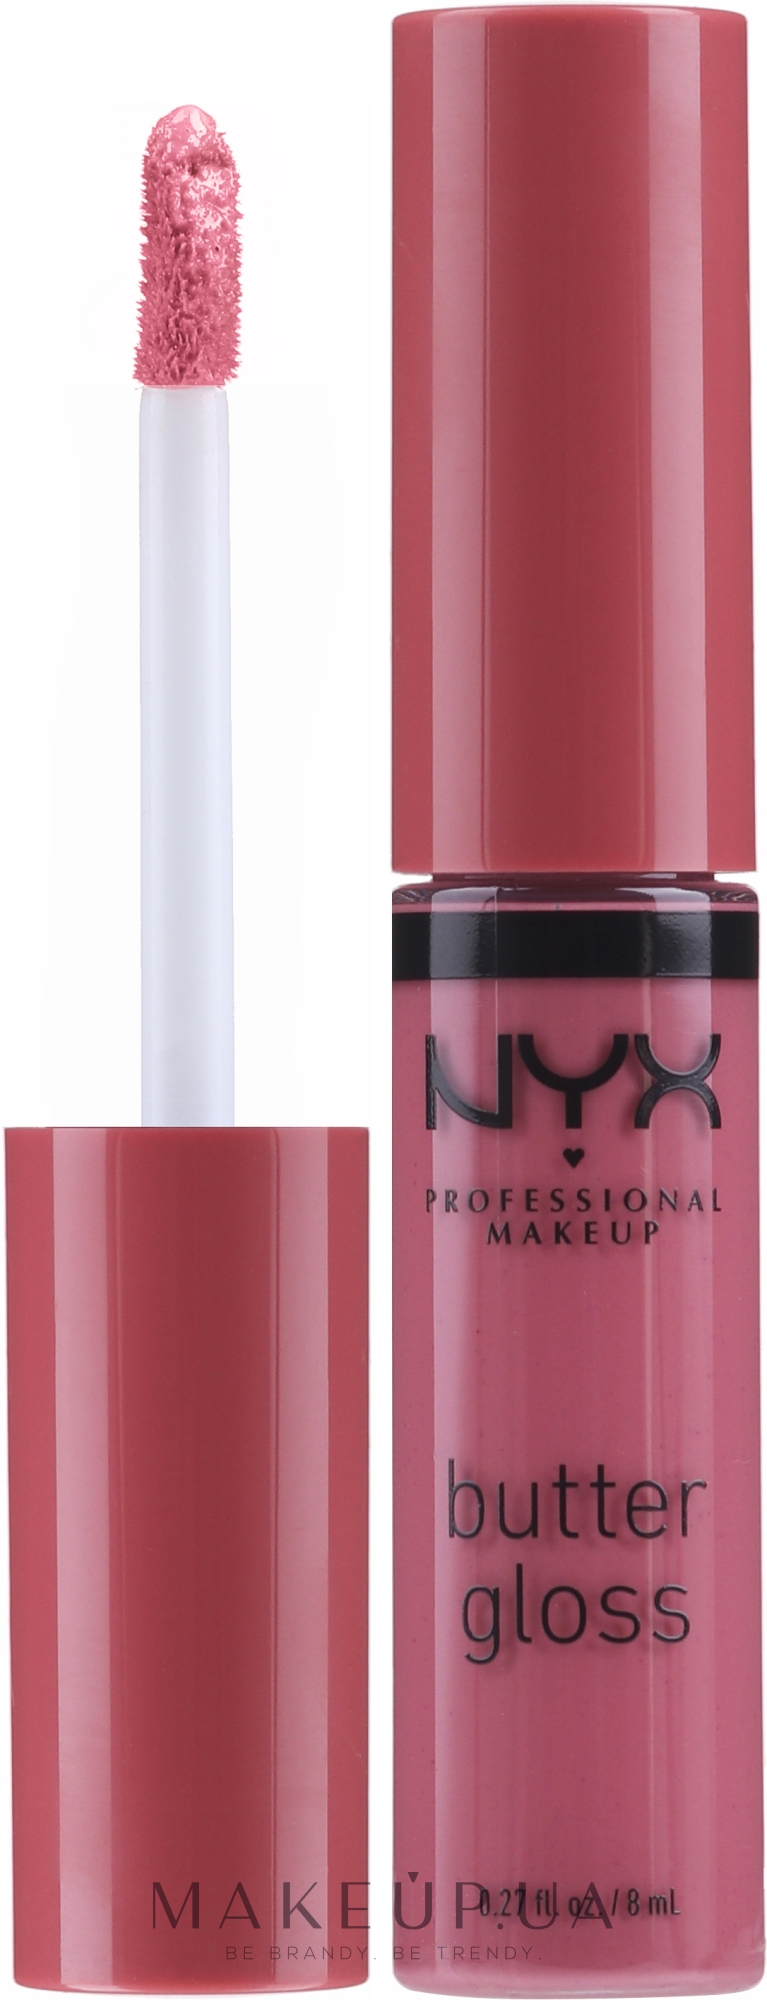 Увлажняющий блеск для губ - NYX Professional Makeup Butter Gloss